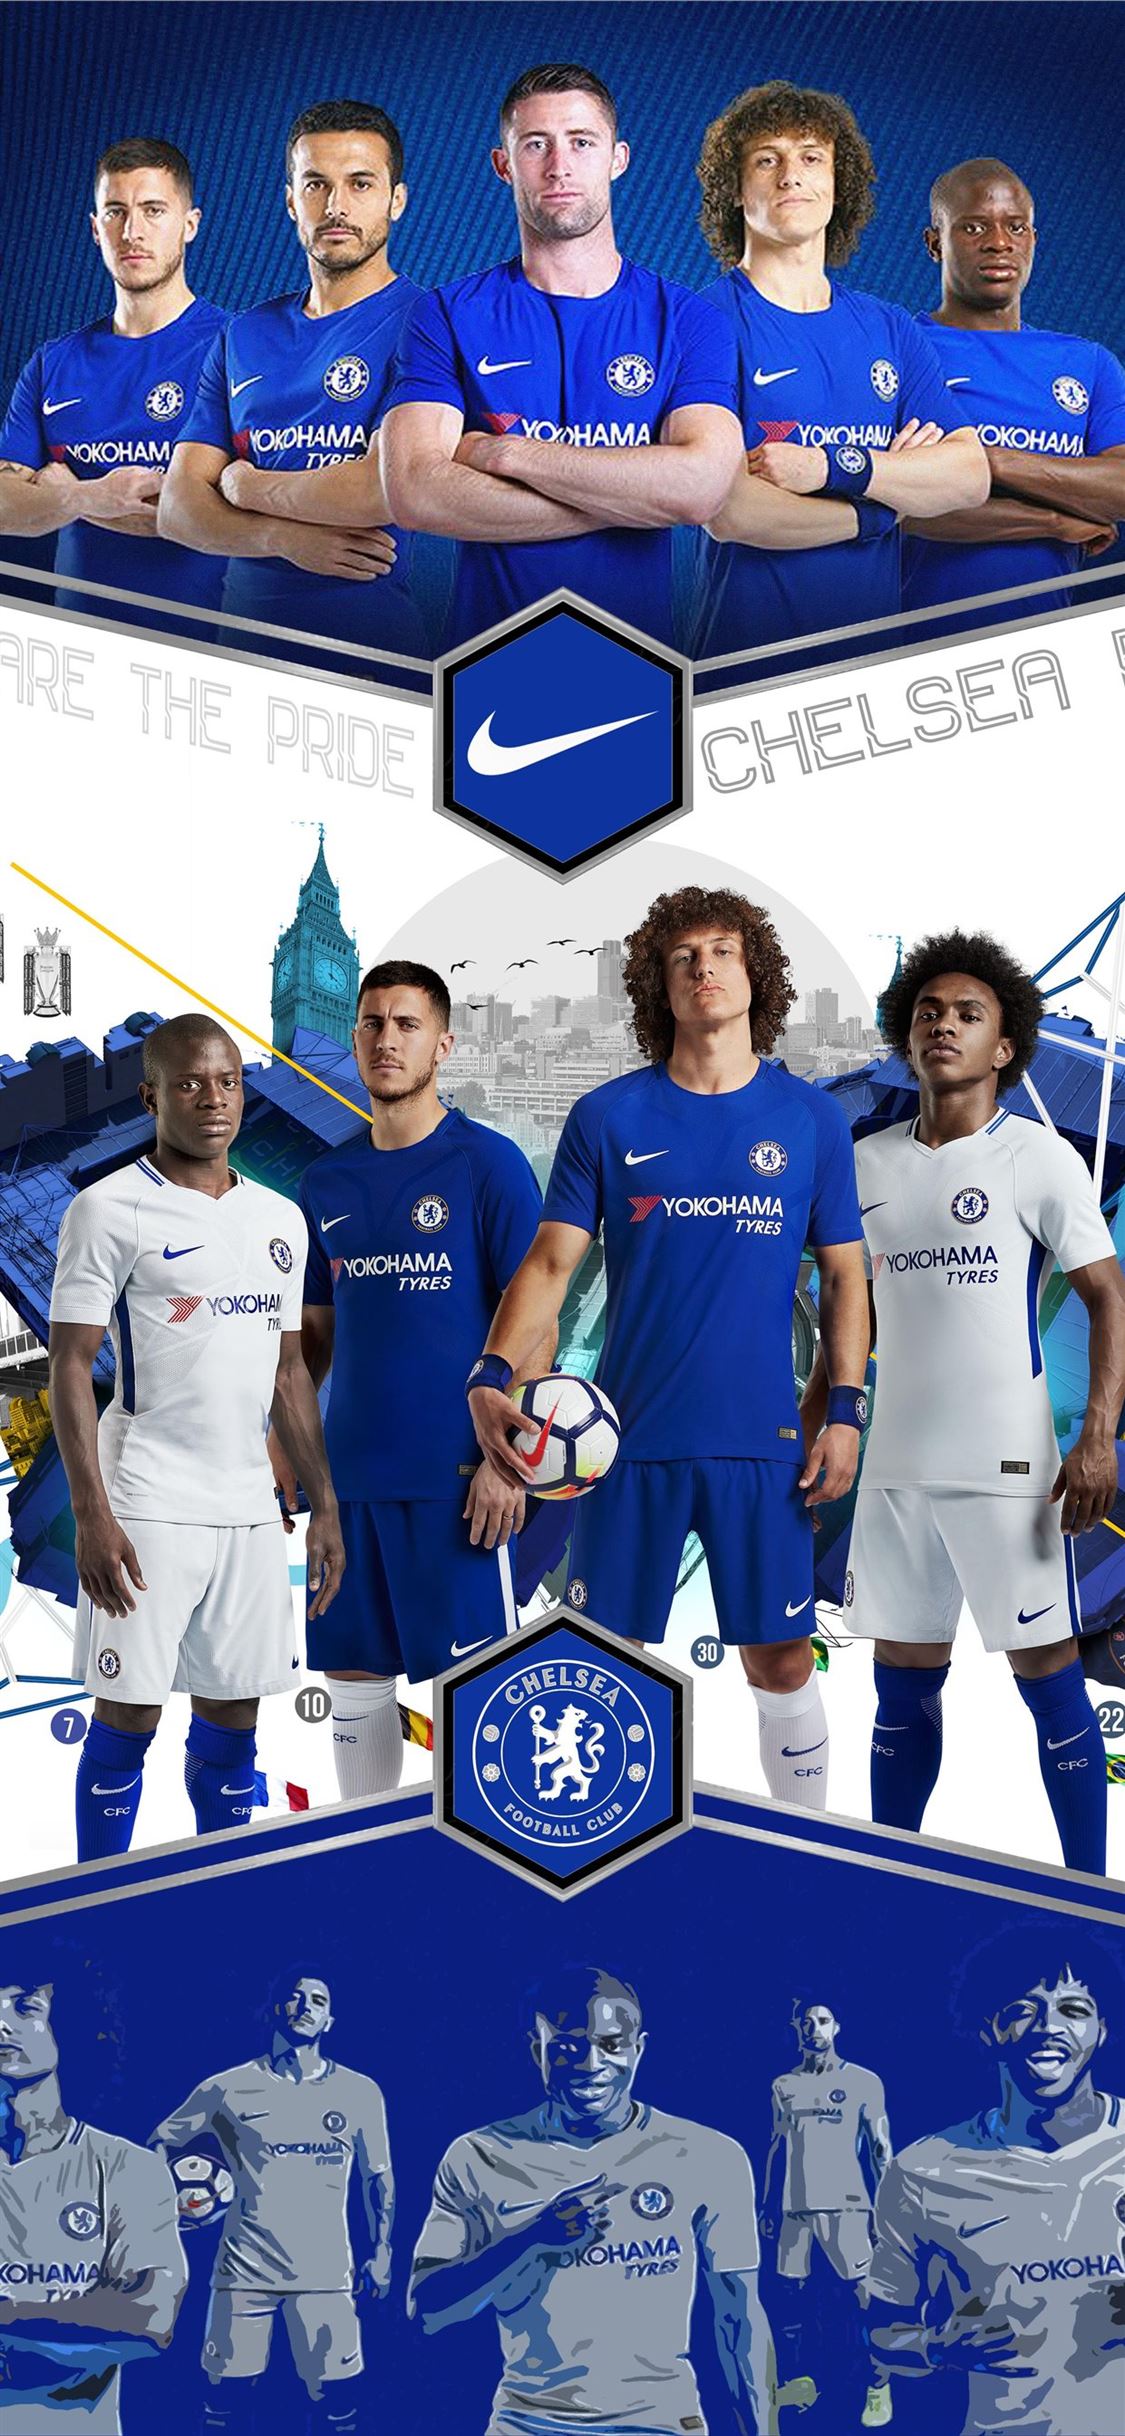 The defender of Chelsea David Luiz scored a goal Desktop wallpapers 640x480